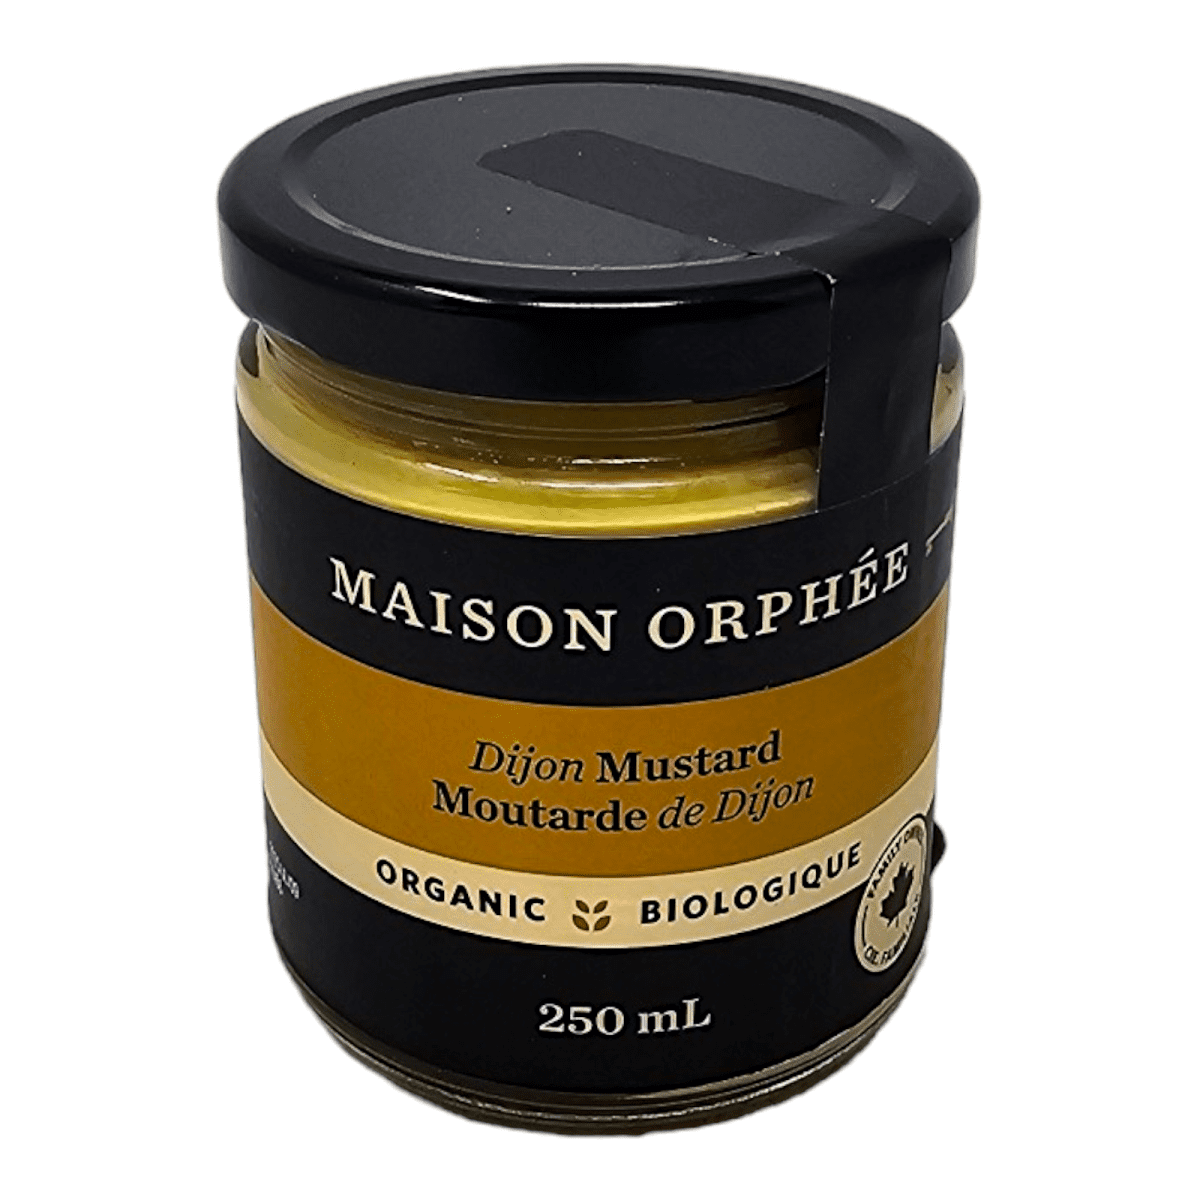 Maison orphee Dijon Mustard (250ml)